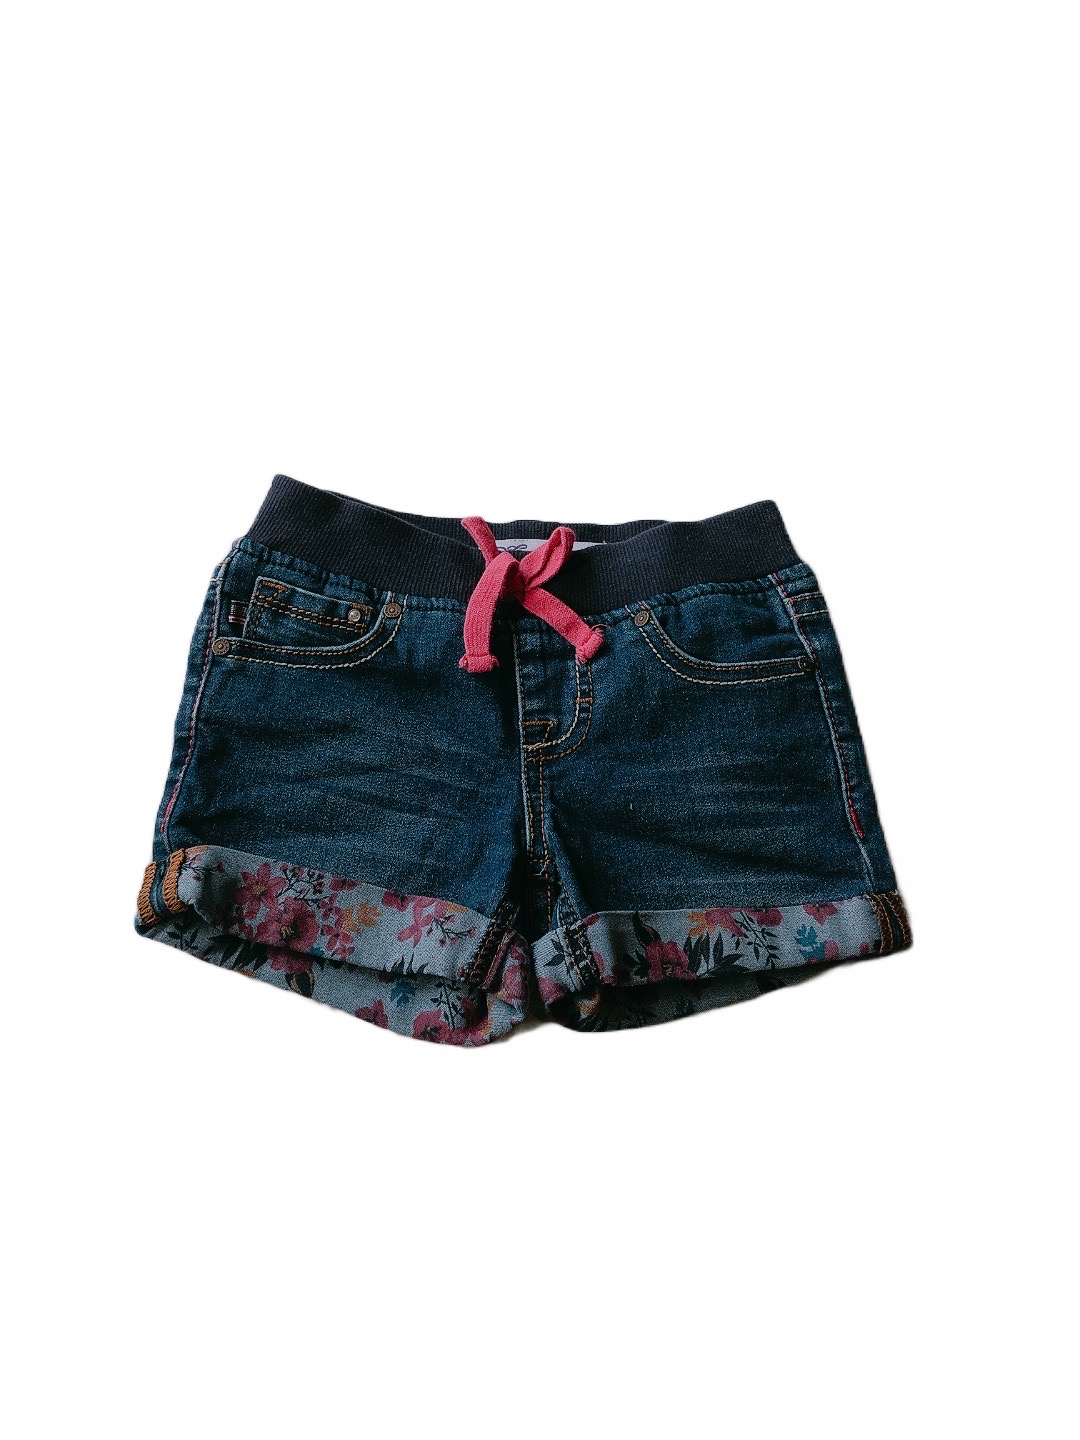 深藍色牛仔女童短褲(6)
NT$89